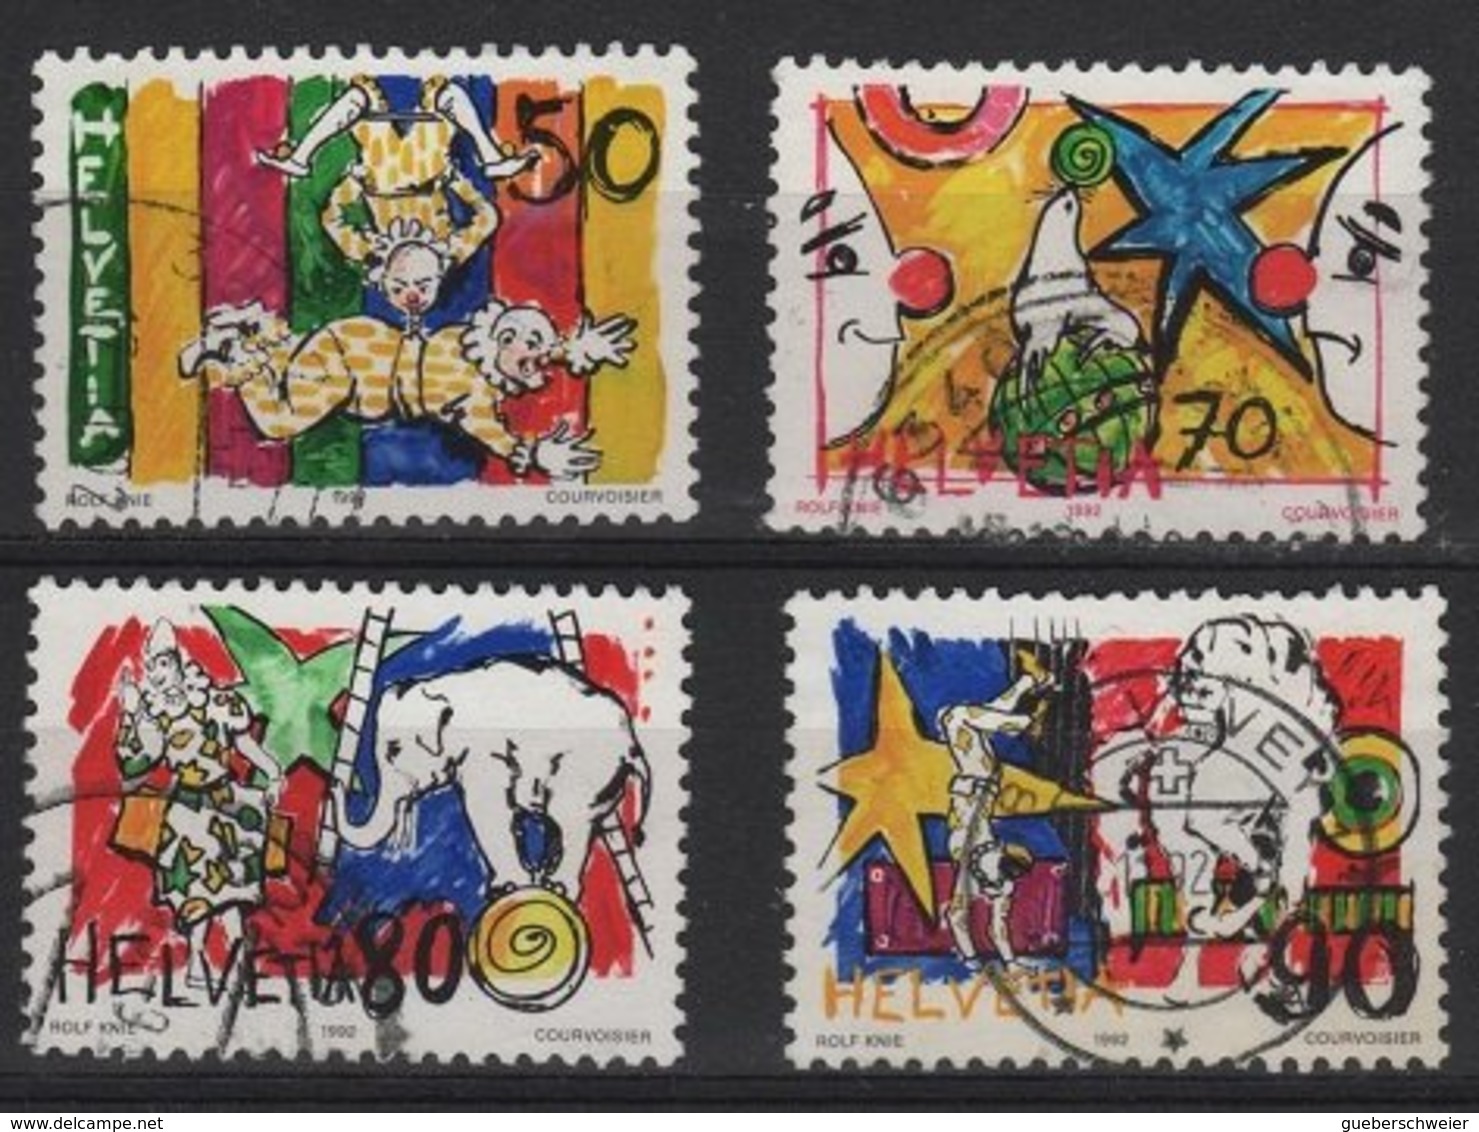 ART 53 - SUISSE N° 1406/09 OBL. Thème Cirque Rolf Knie - Used Stamps